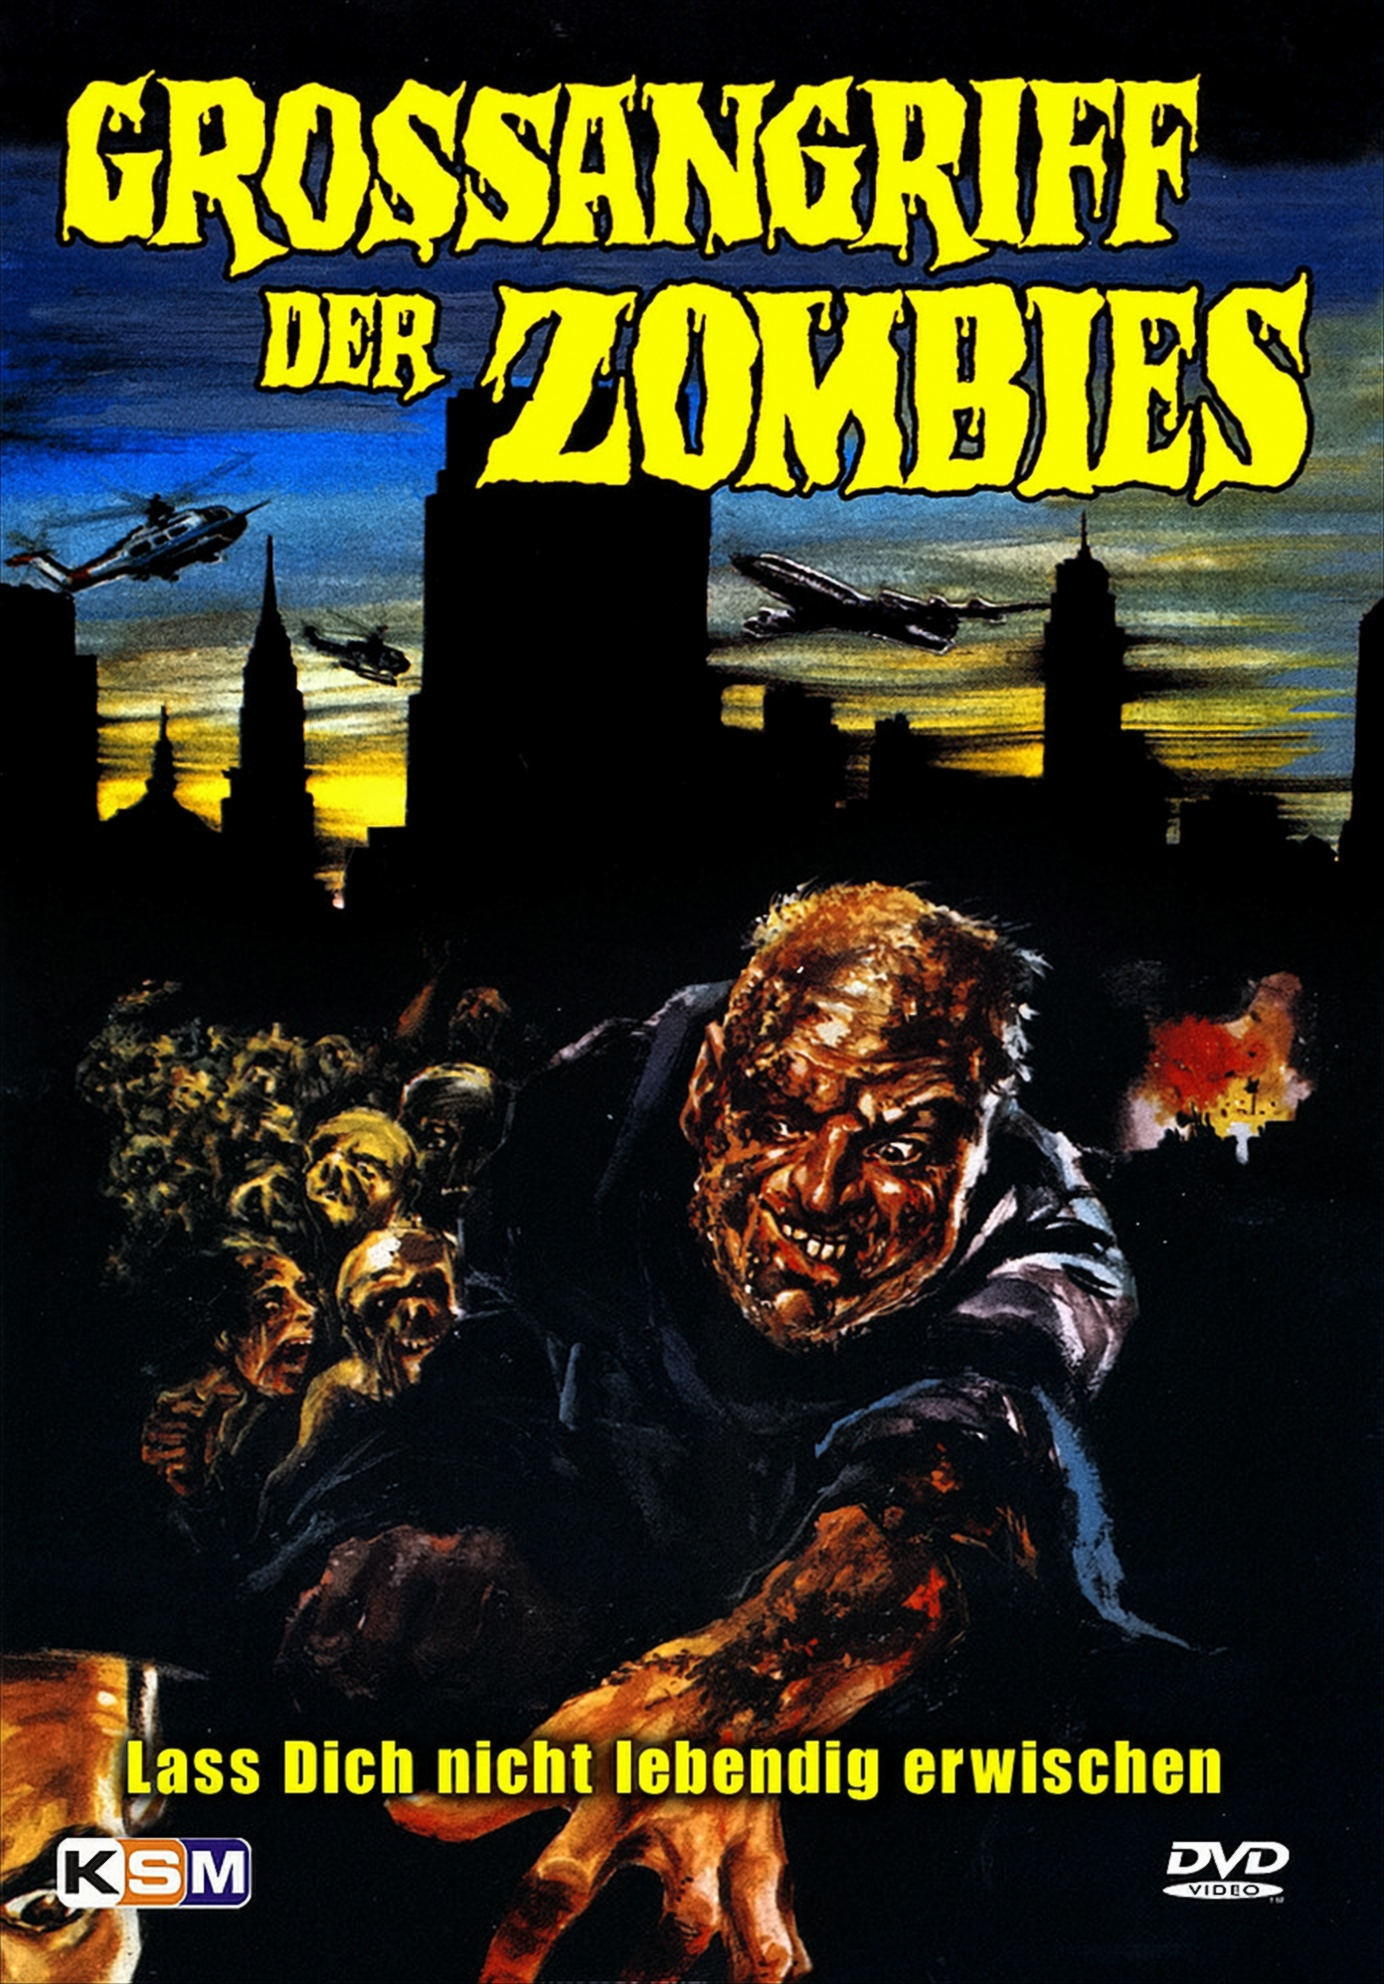 Großangriff DVD der Zombies